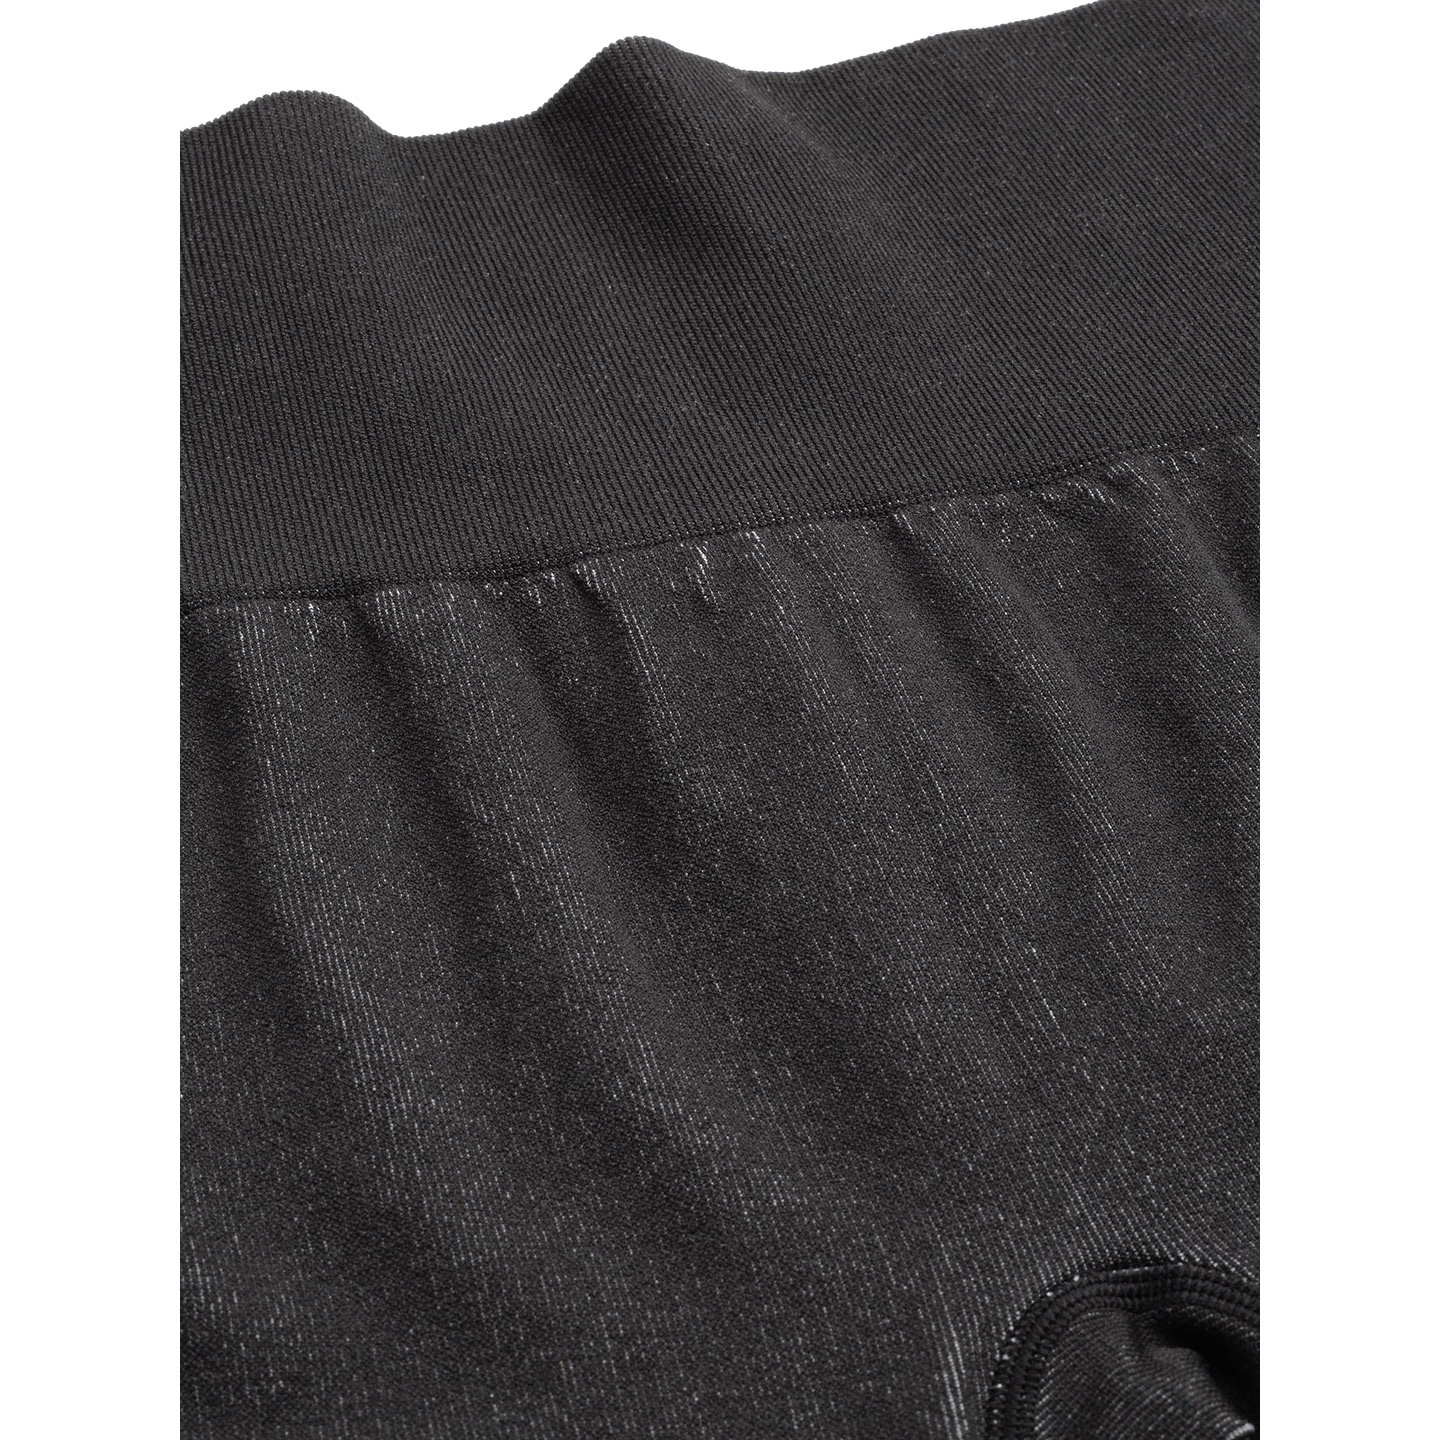 Charcoal Grey Side Panel Workout Wear Leggings